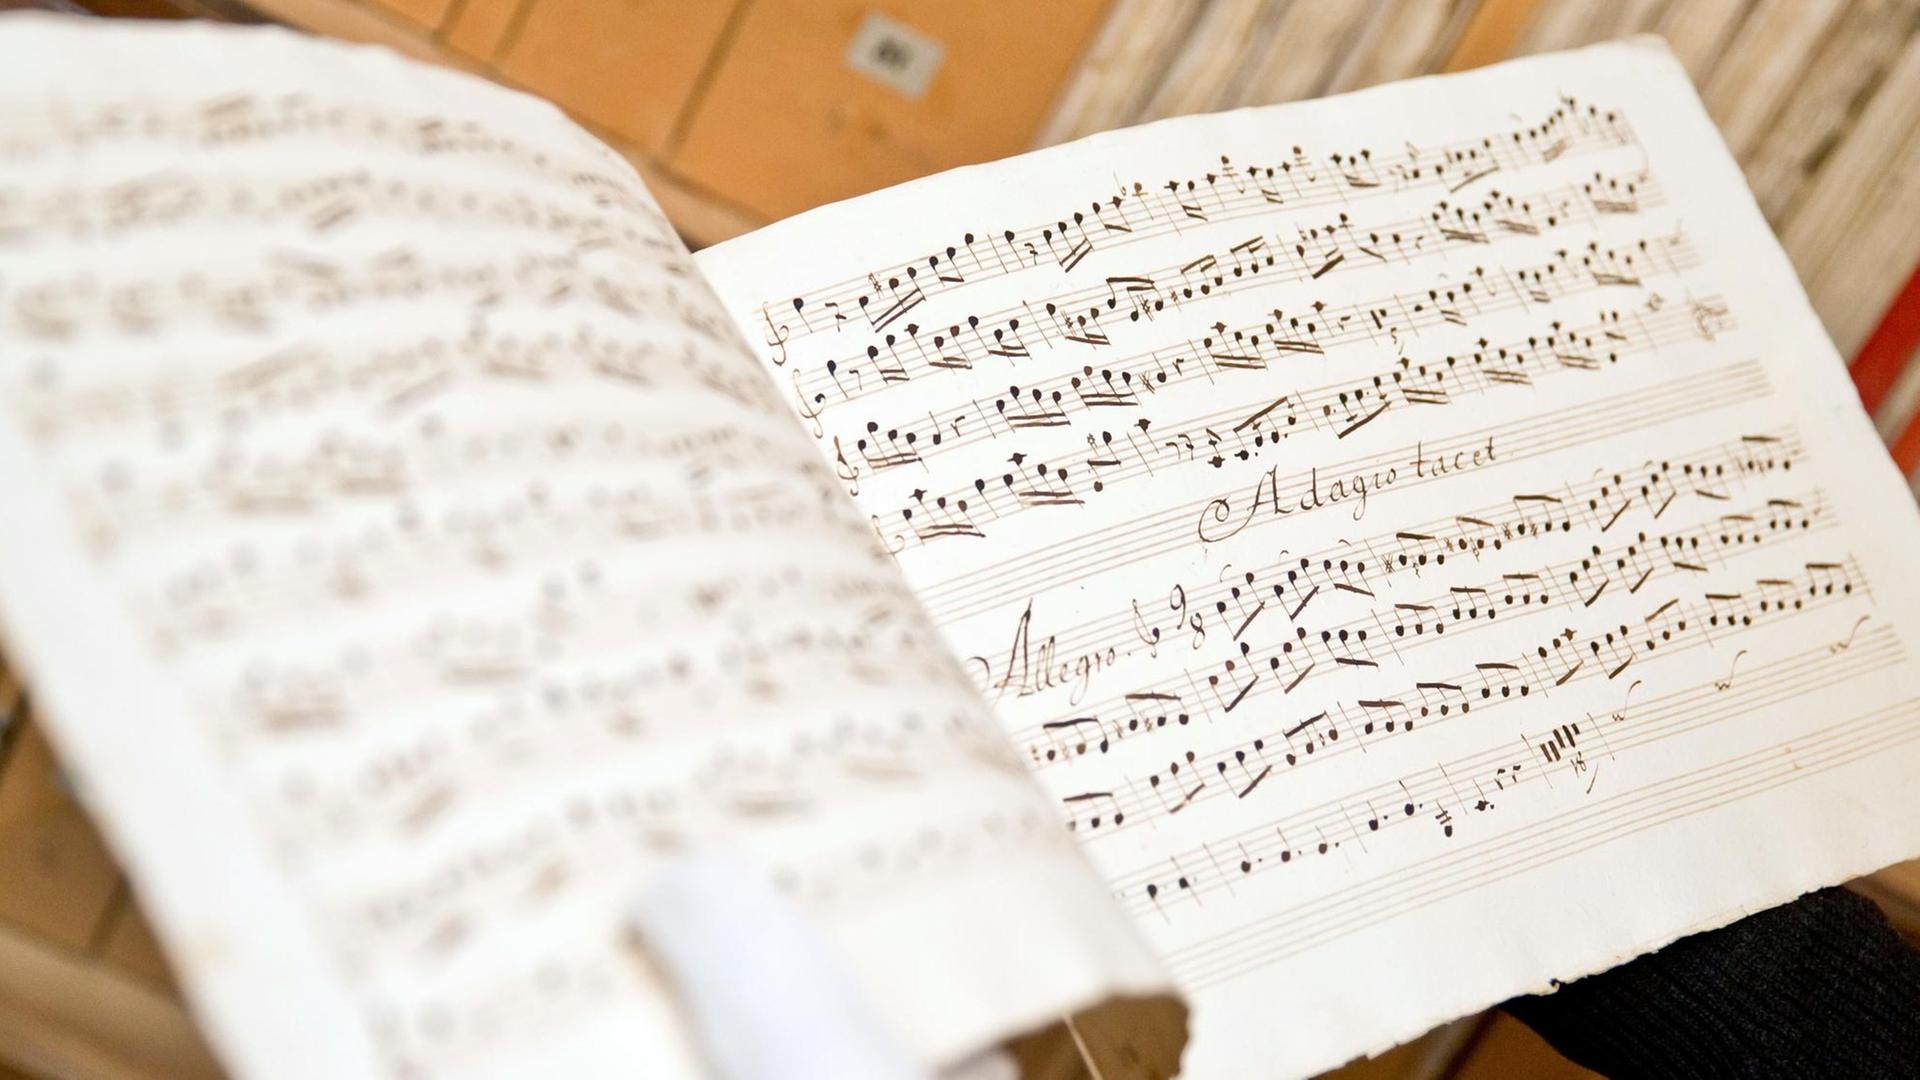 Notenblätter vom italienschen Komponisten Antonio Vivaldi.